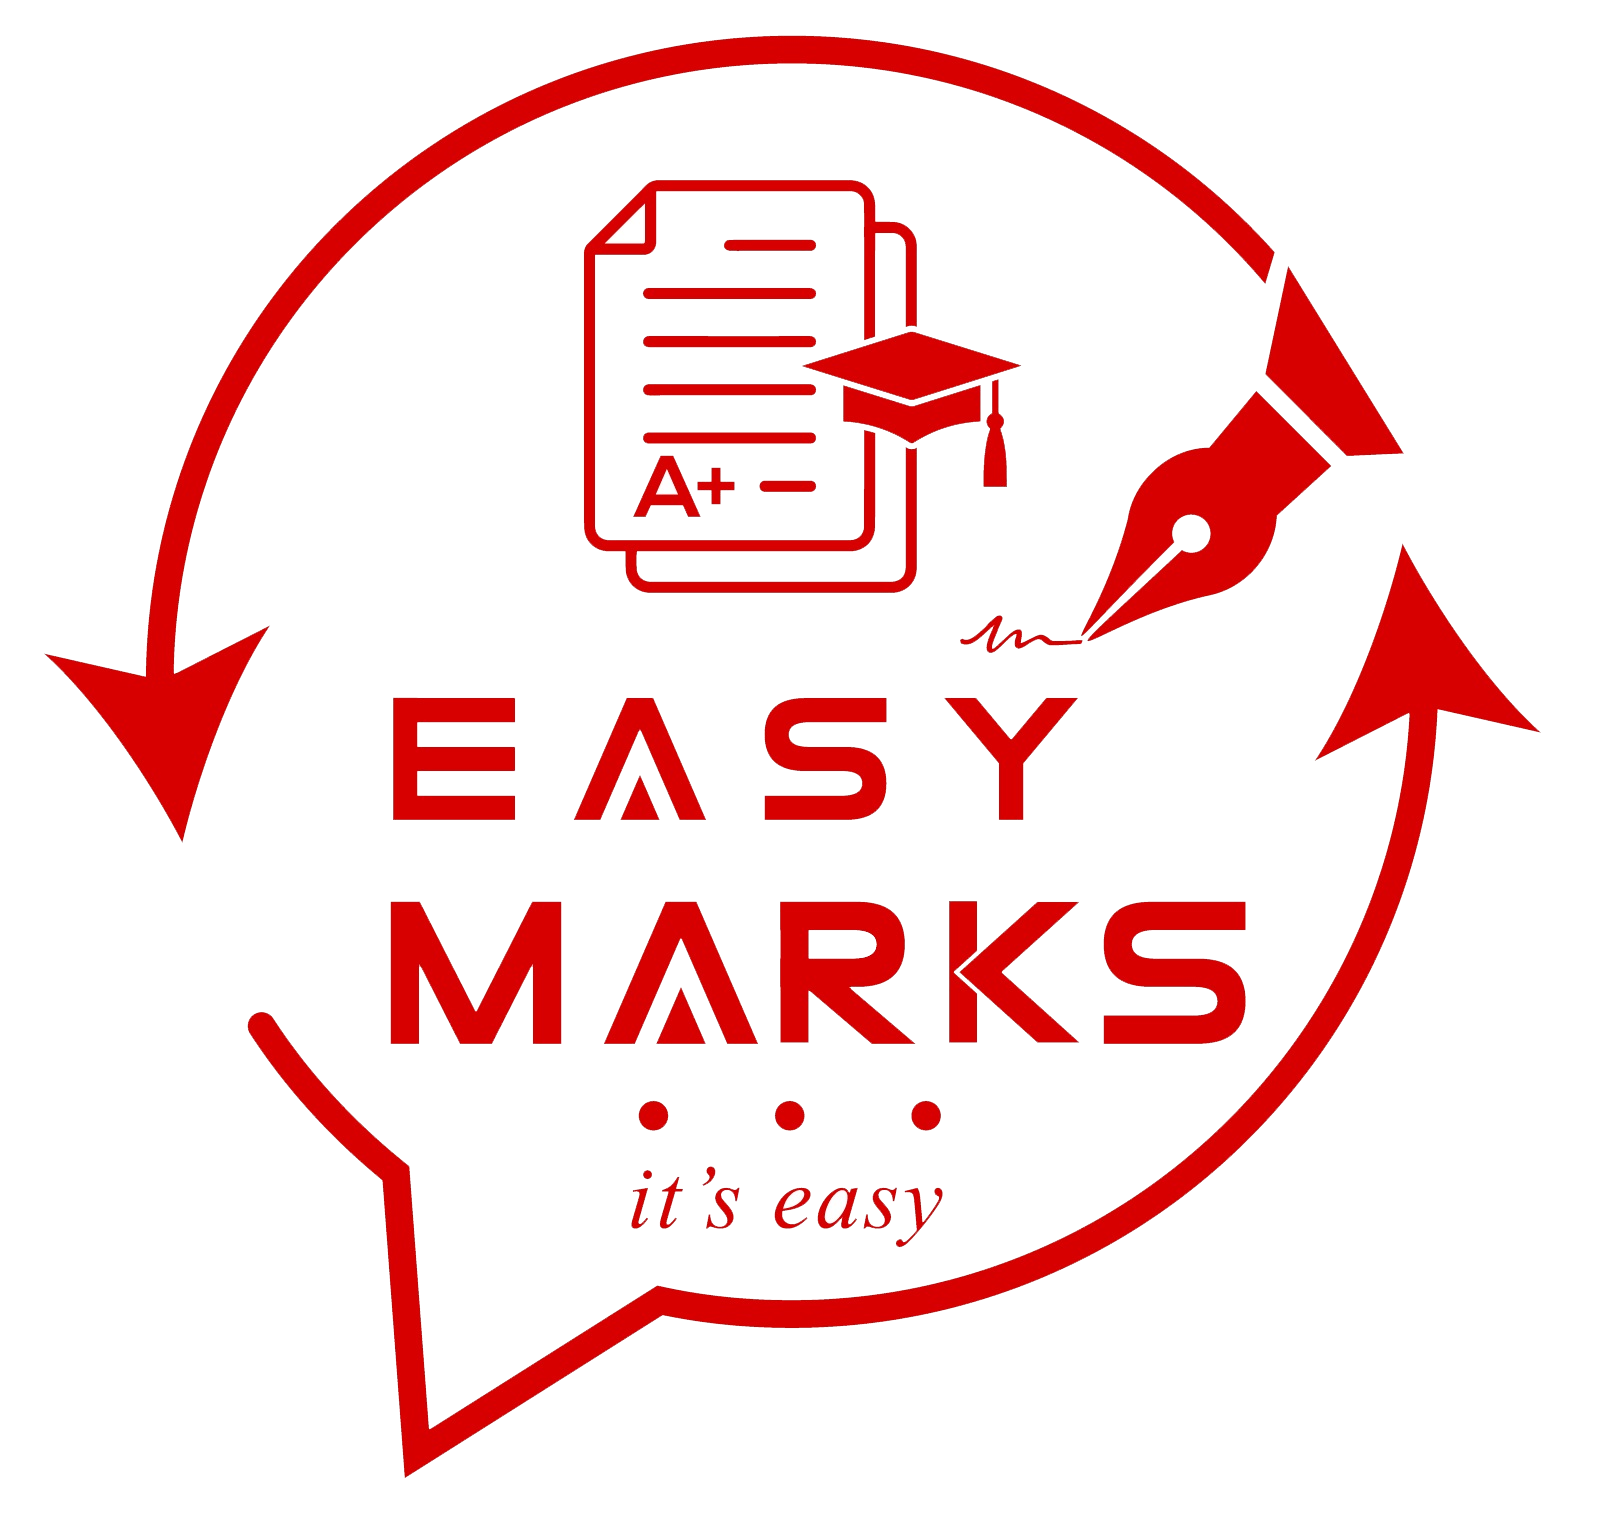 Easy Marks